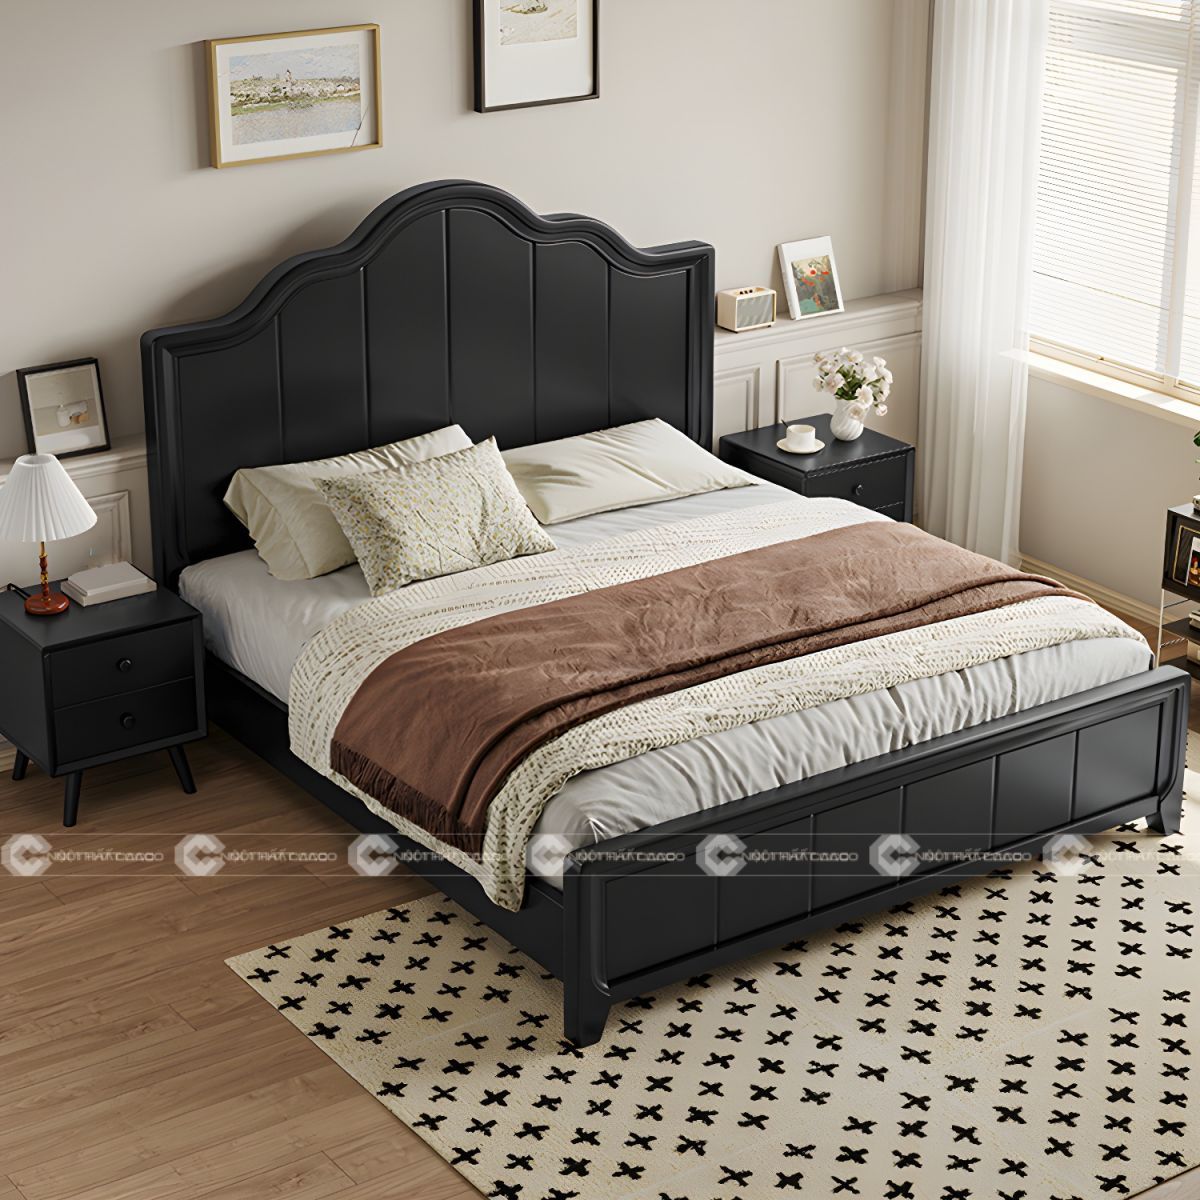 Giường ngủ gỗ tự nhiên chân thấp, tối ưu diện tích